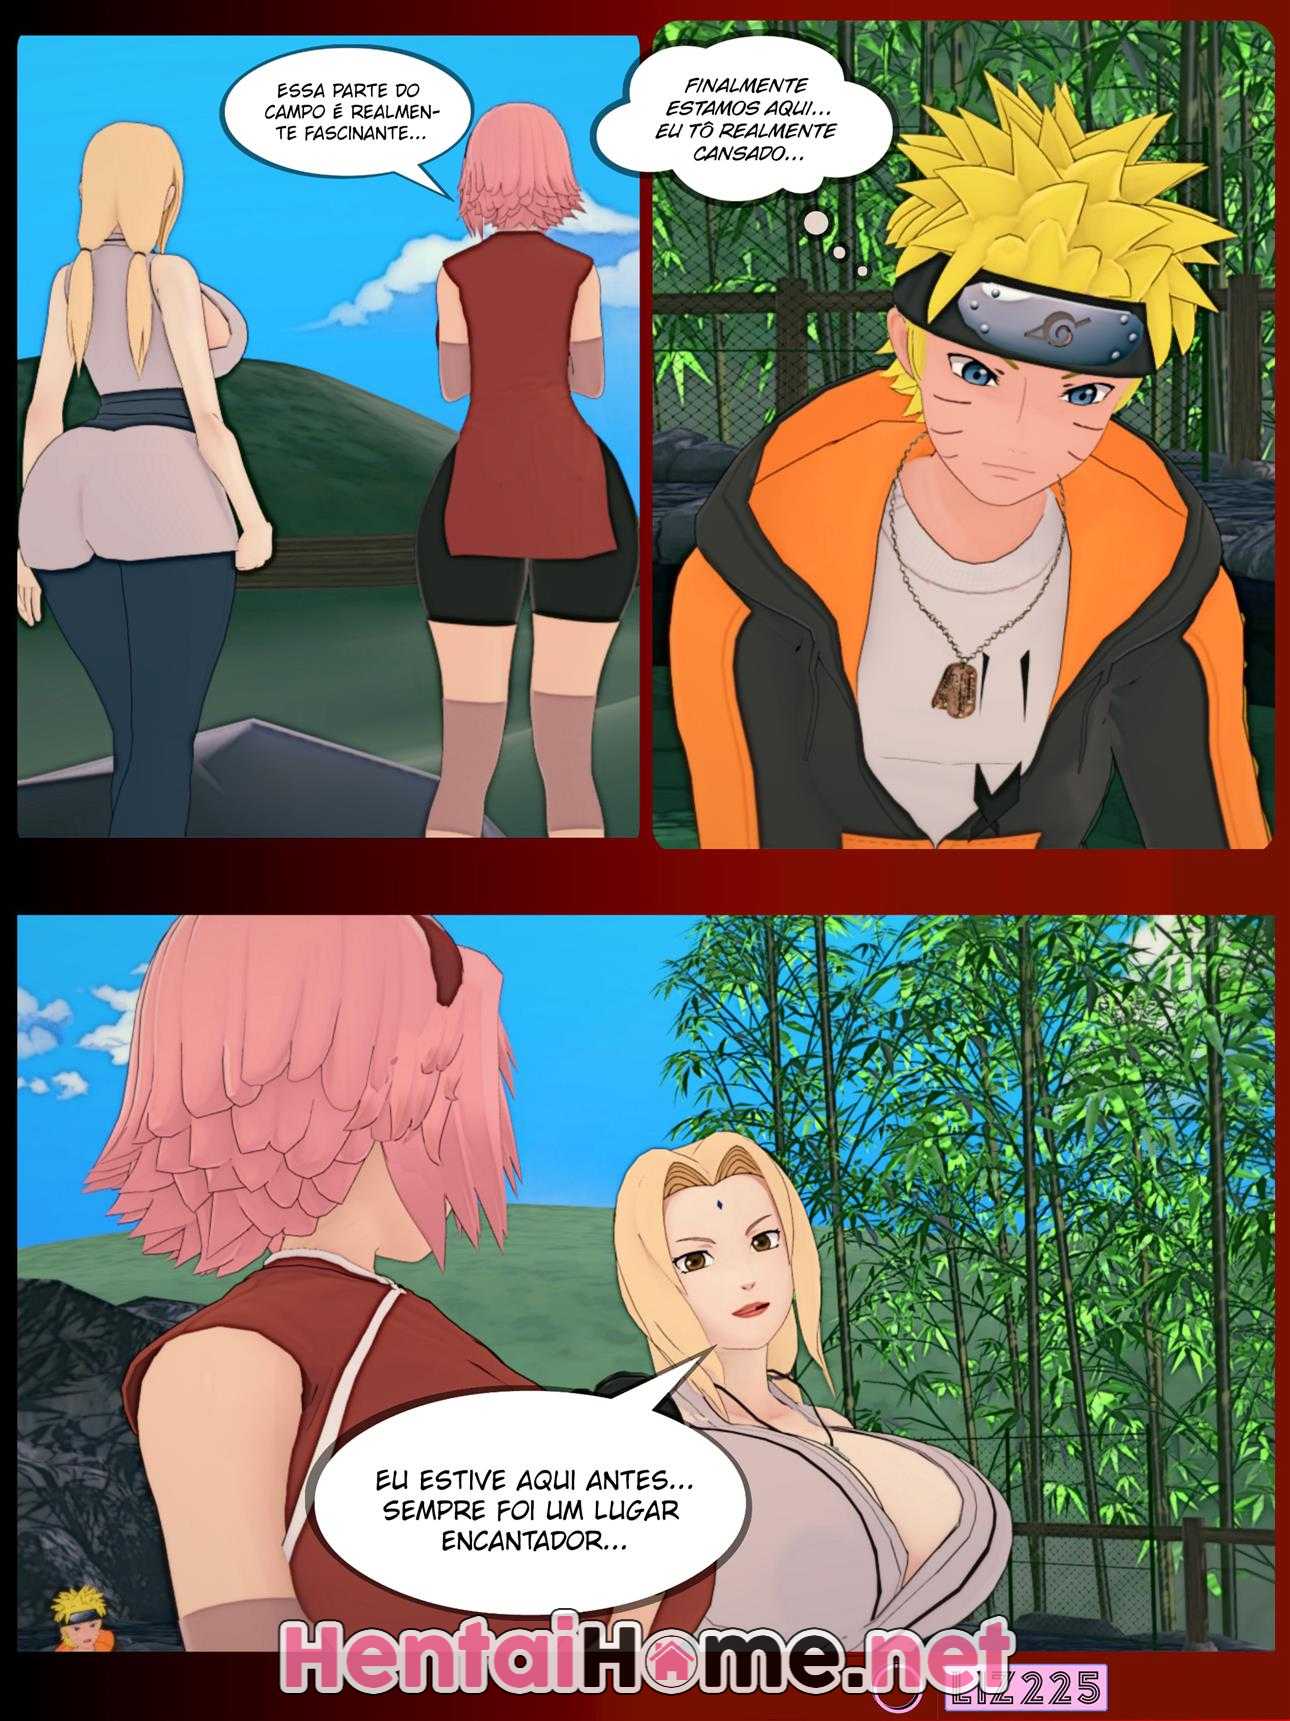 Naruto – A história não contada